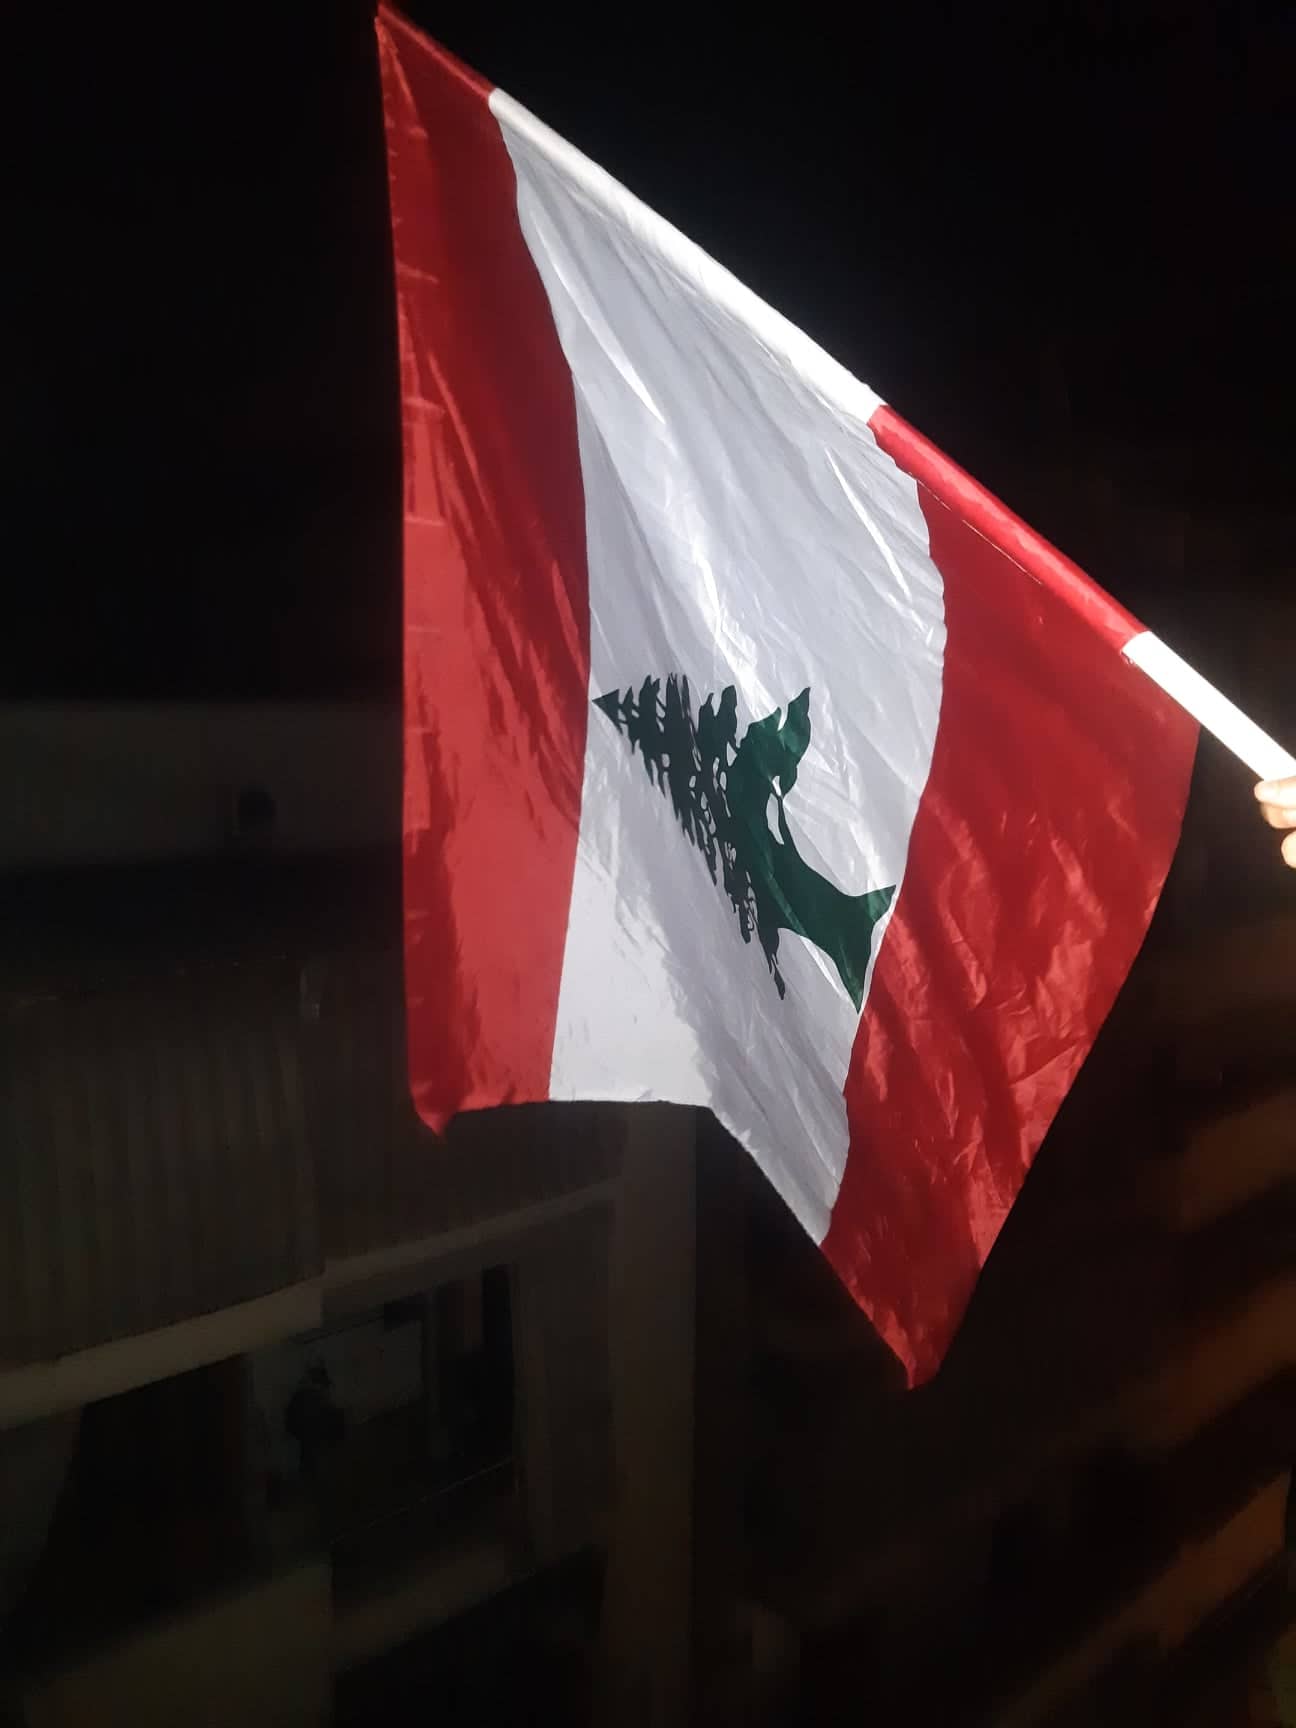 Dans toutes les rues du pays, c'est le drapeau libanais qui flotte, aucun autre drapeau n'est toléré car cette fois ci le peuple est uni. Les Libanais de tout bords politiques et de toutes classes sociales sont les uns aux côtés des autres pour défendre un intérêt commun et réclamer une amélioration des conditions de vie. Crédit photo CJ